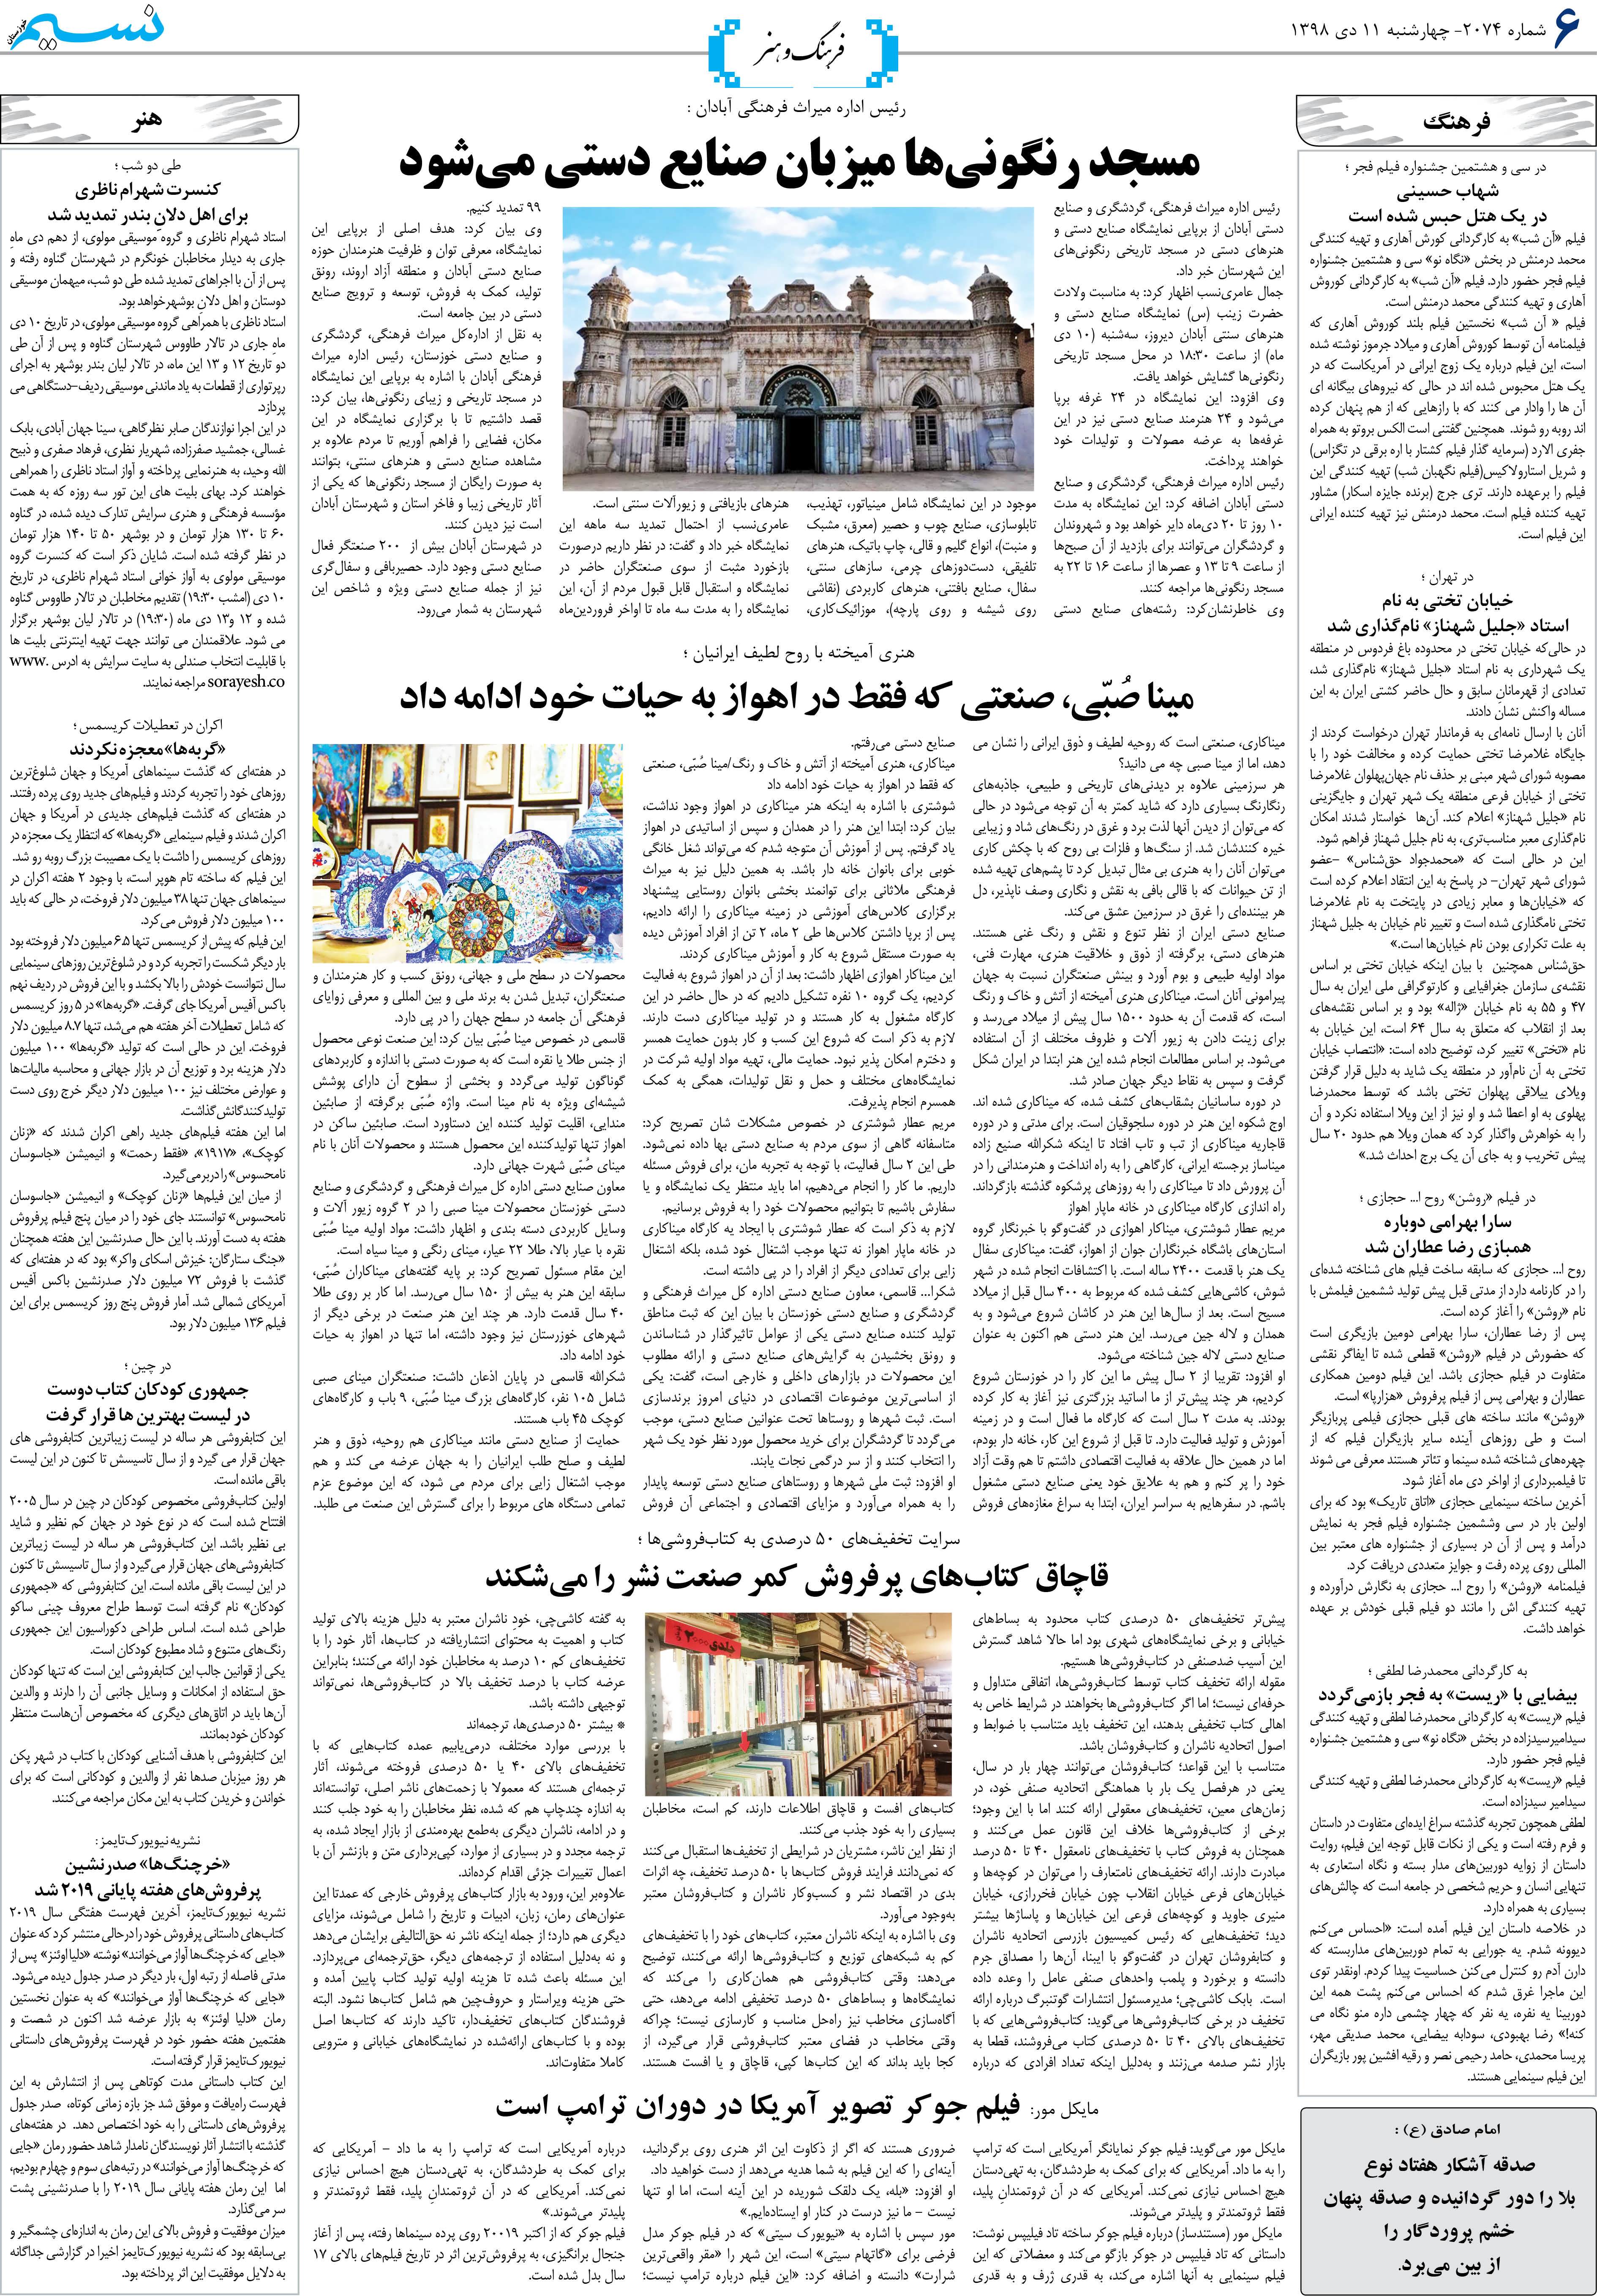 صفحه فرهنگ و هنر روزنامه نسیم شماره 2074